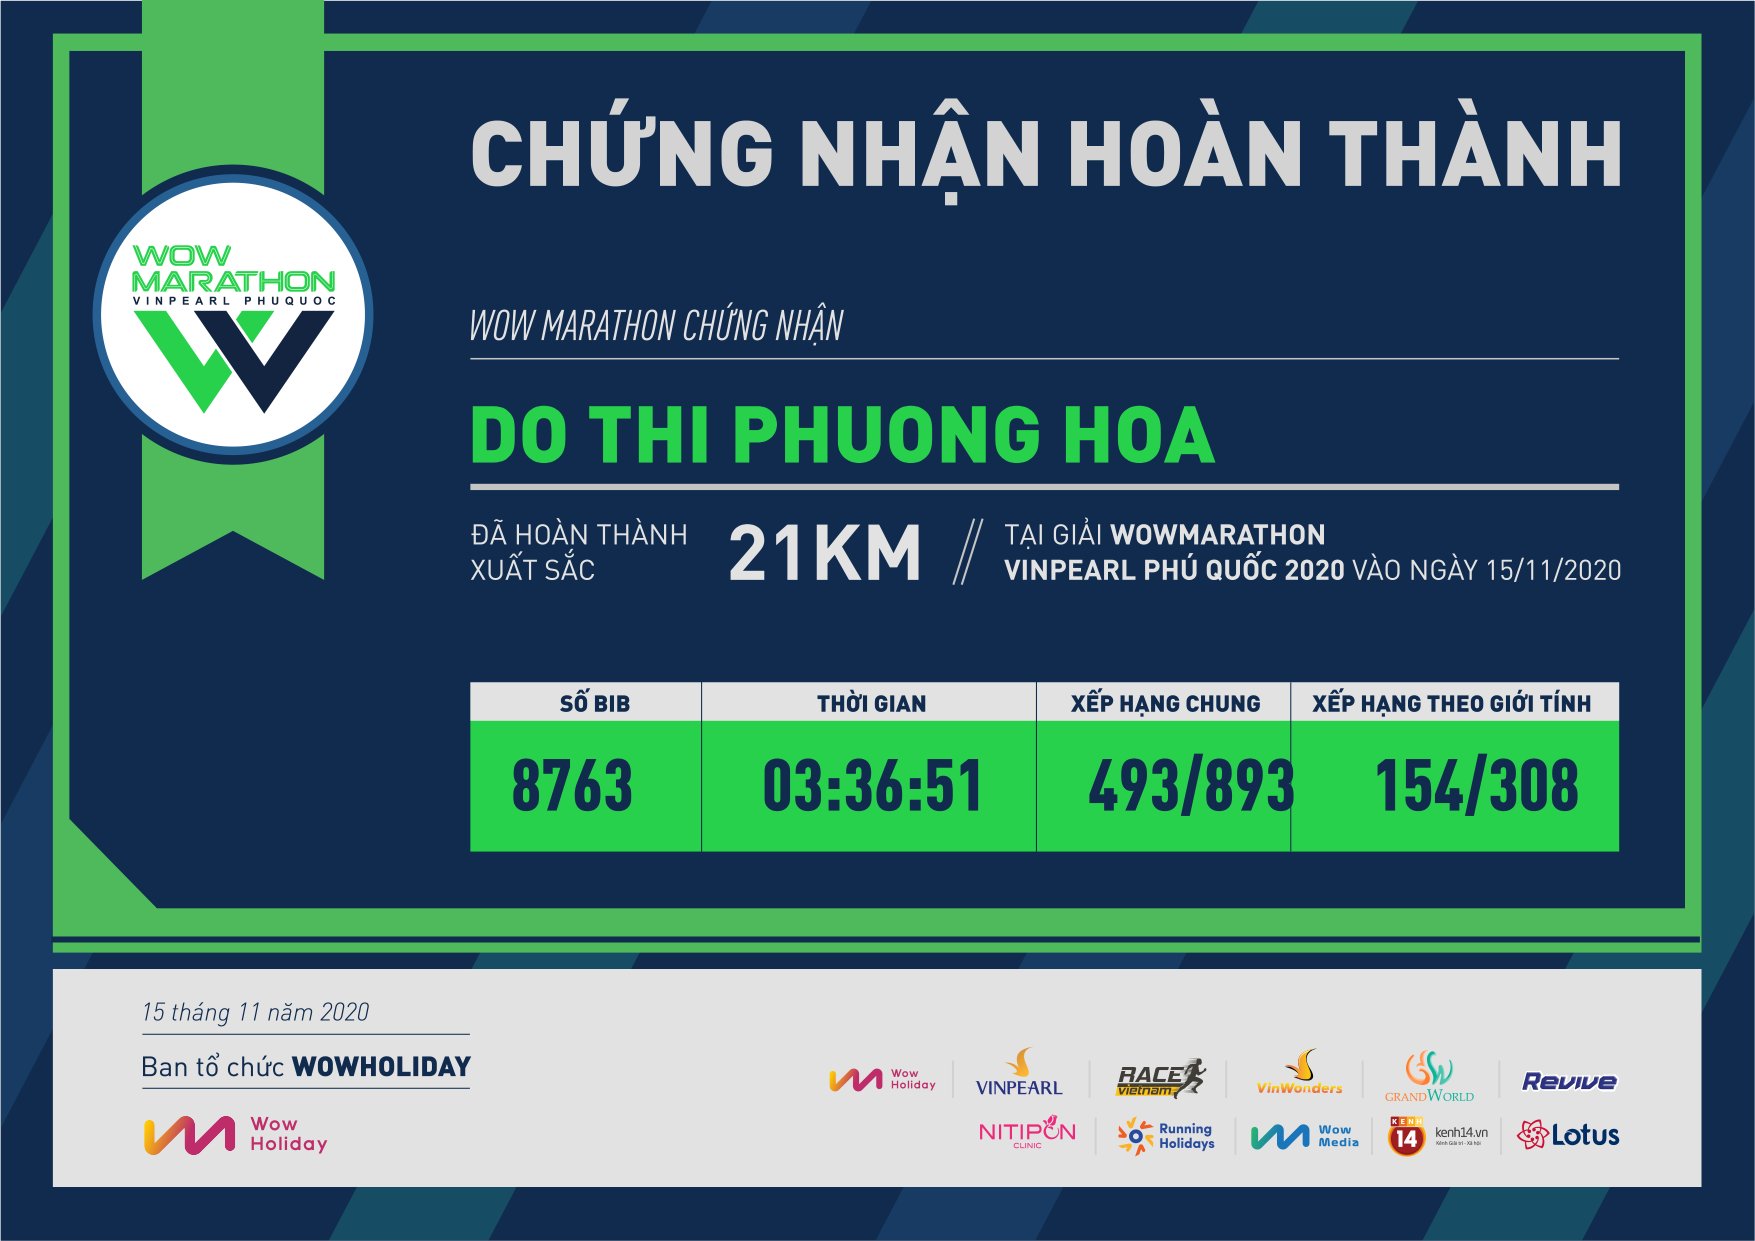 8763 - Do Thi Phuong Hoa